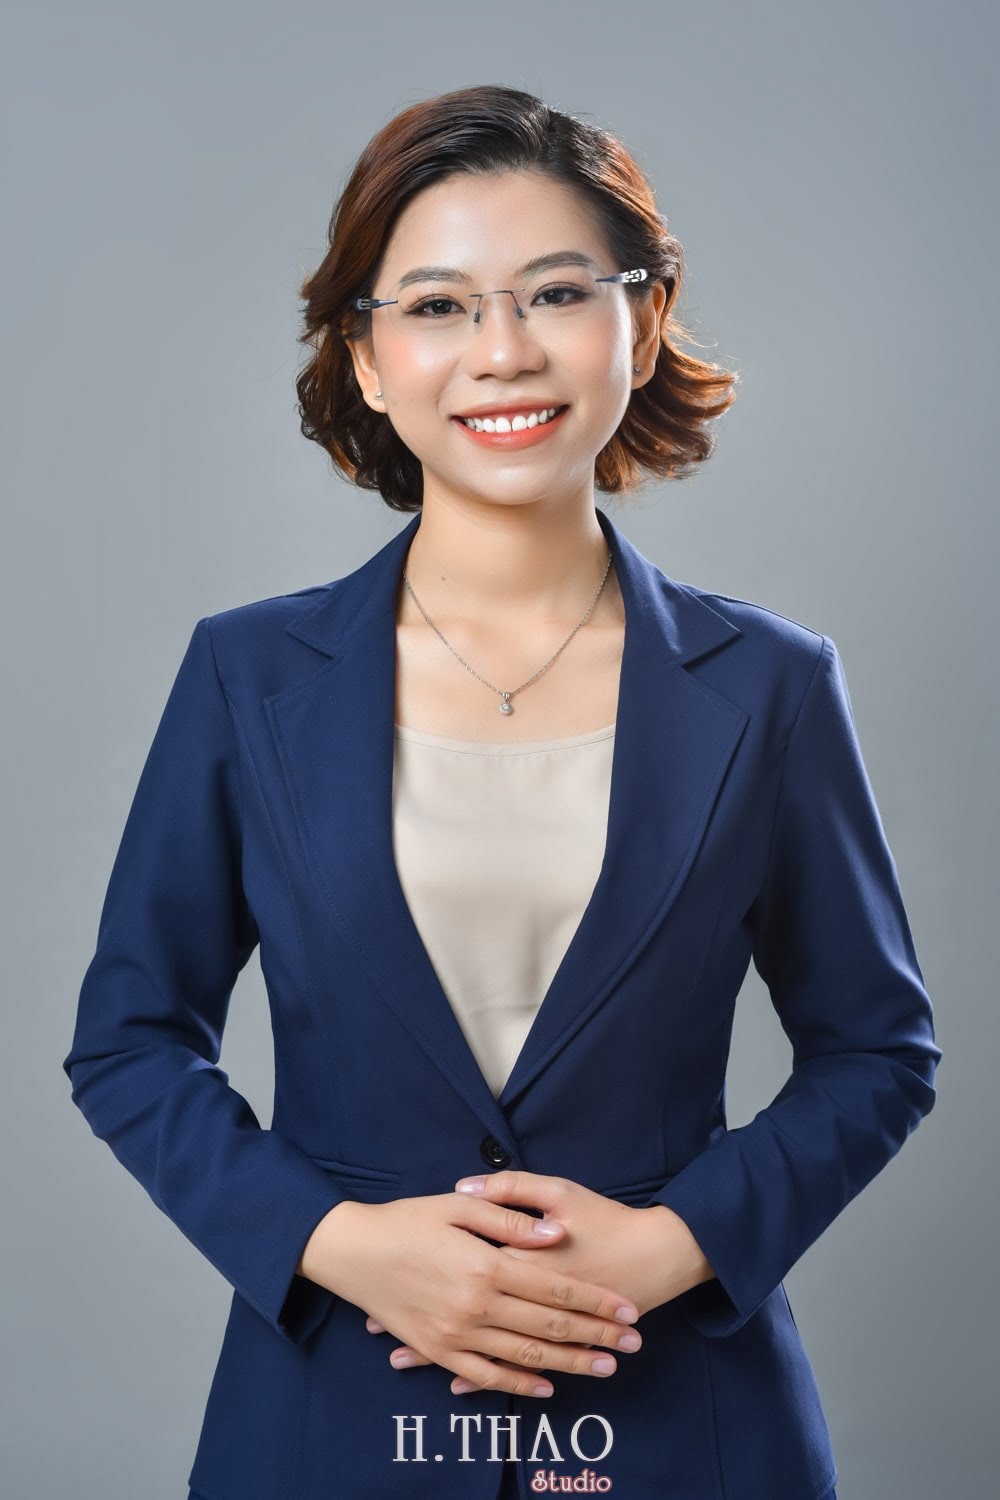 Anh profile  12 min - Tổng hợp ảnh profile nghề nghiệp bác sĩ, ngân hàng đẹp- HThao Studio